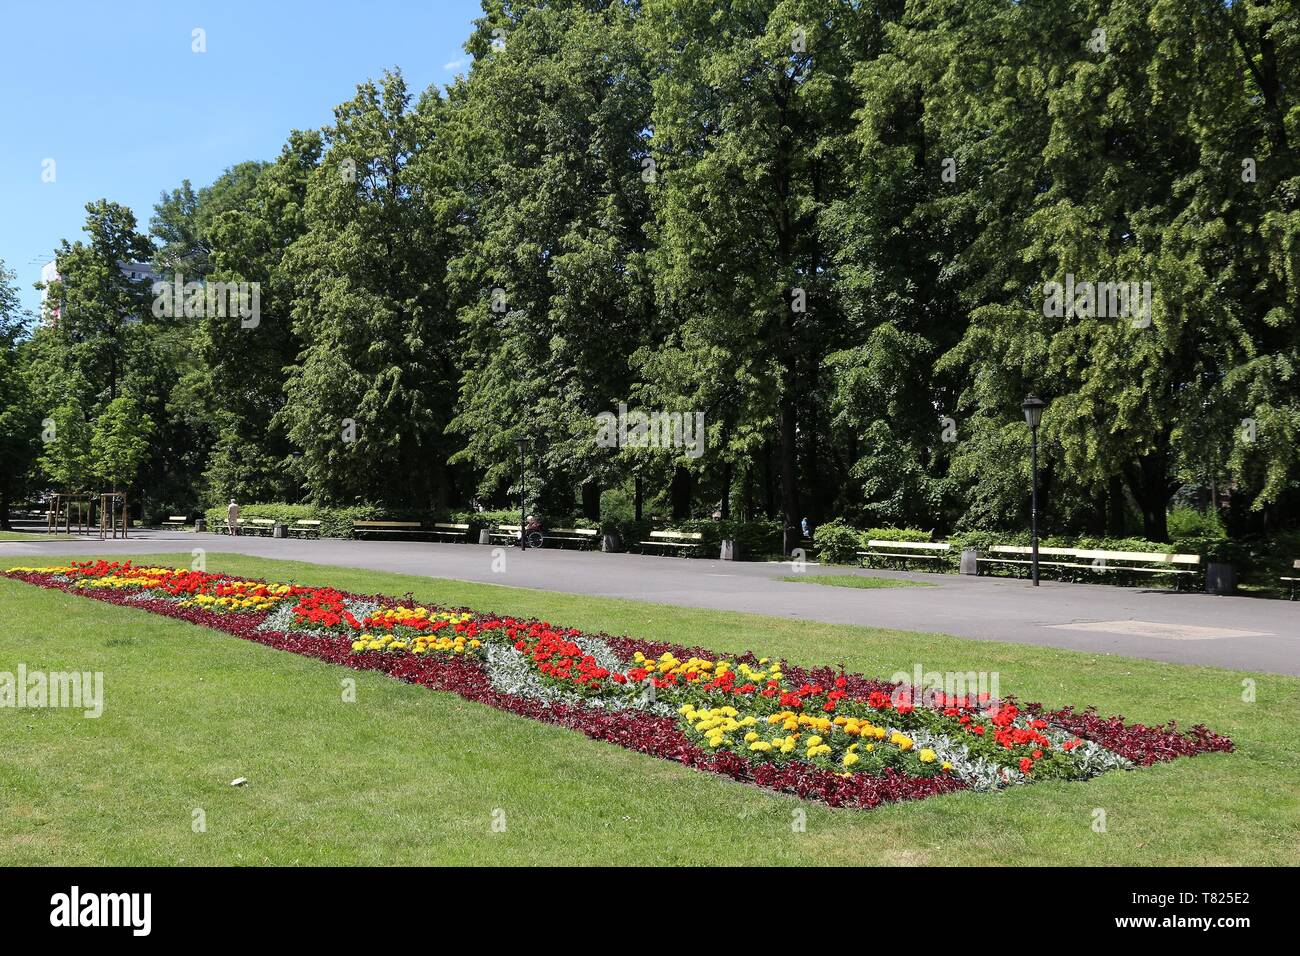 Warsaw, Poland - Ogrod Saski garden. Public park. Stock Photo